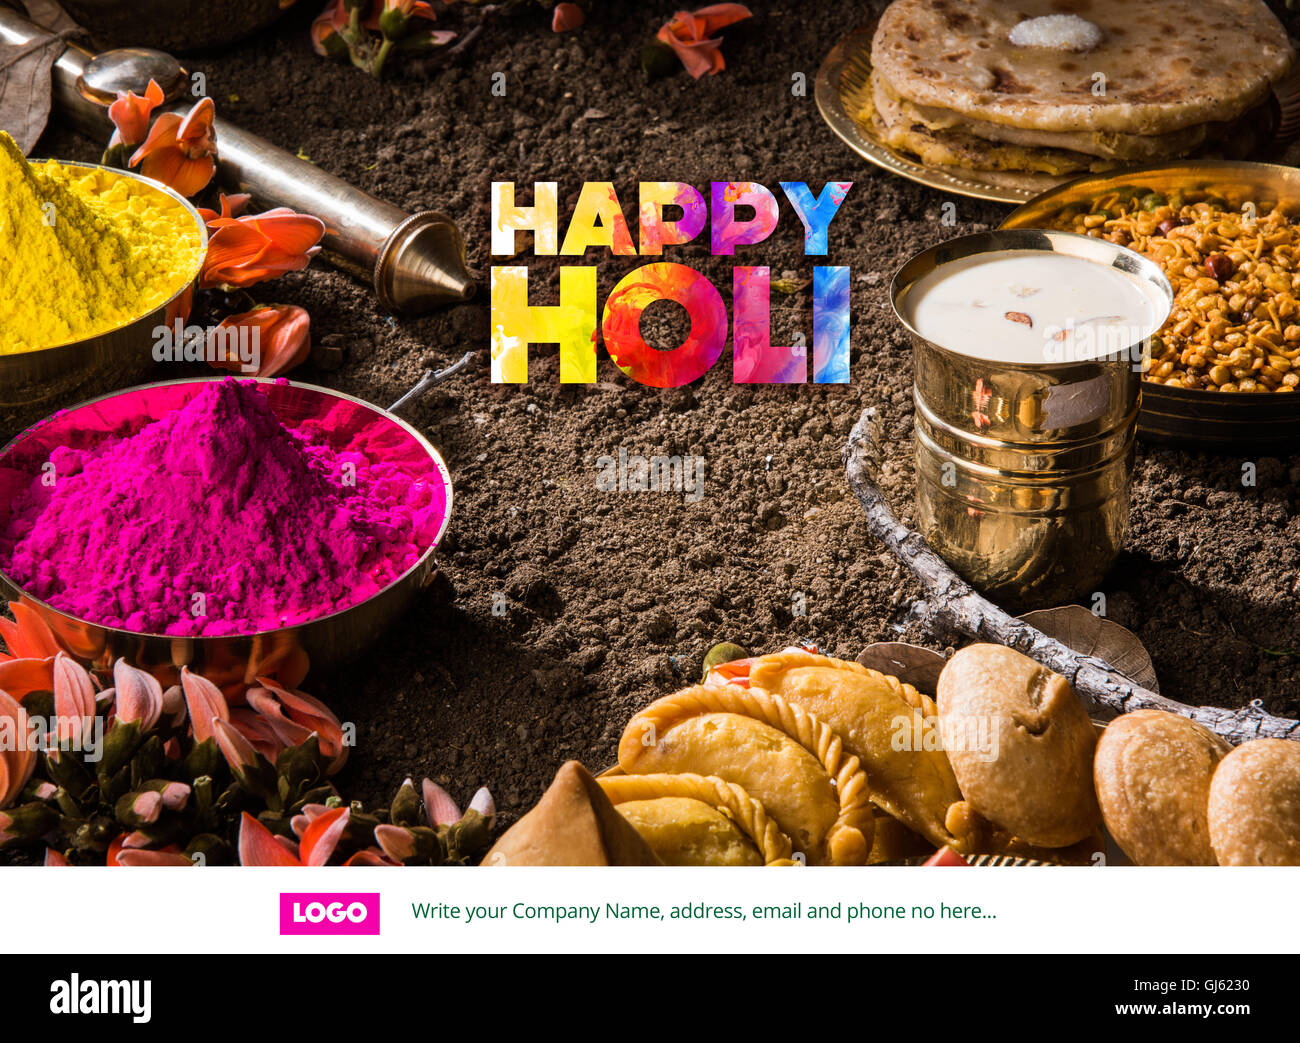 Happy holi holi, carte de vœux carte de vœux, souhaits de festival indien de couleurs appelé holi, meilleurs vœux Banque D'Images